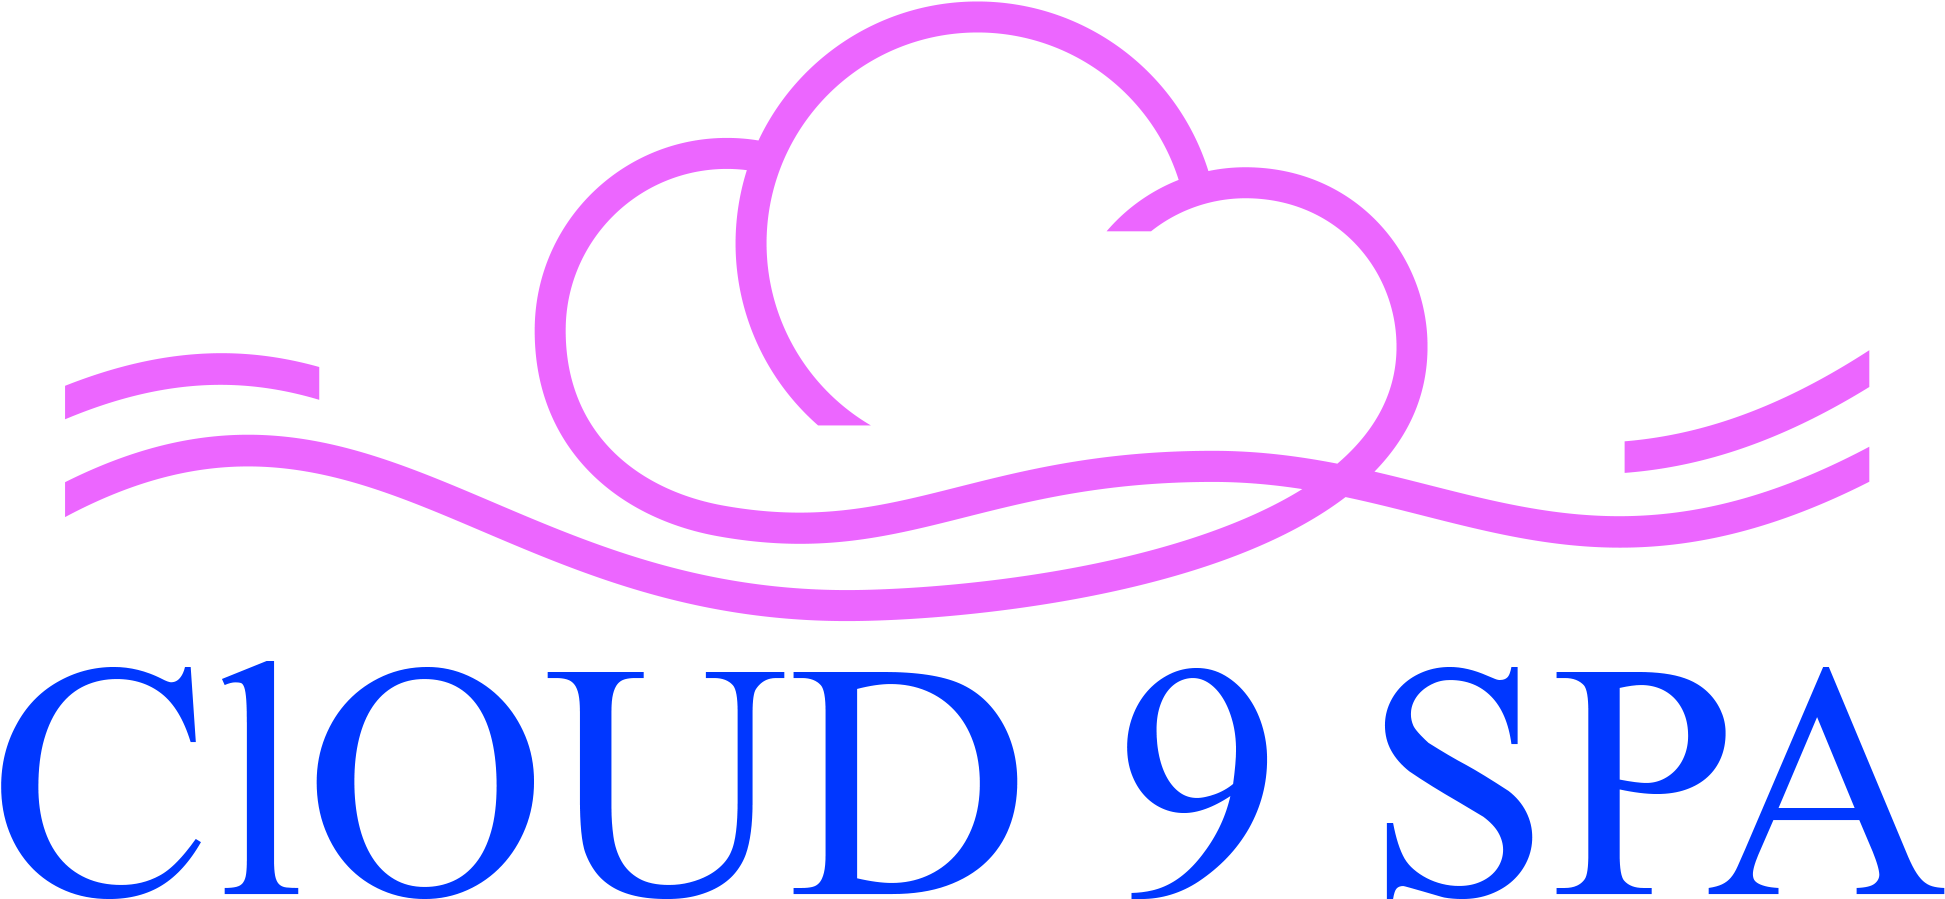 Cloud 9 Spa - Dehradun (1957x1098)